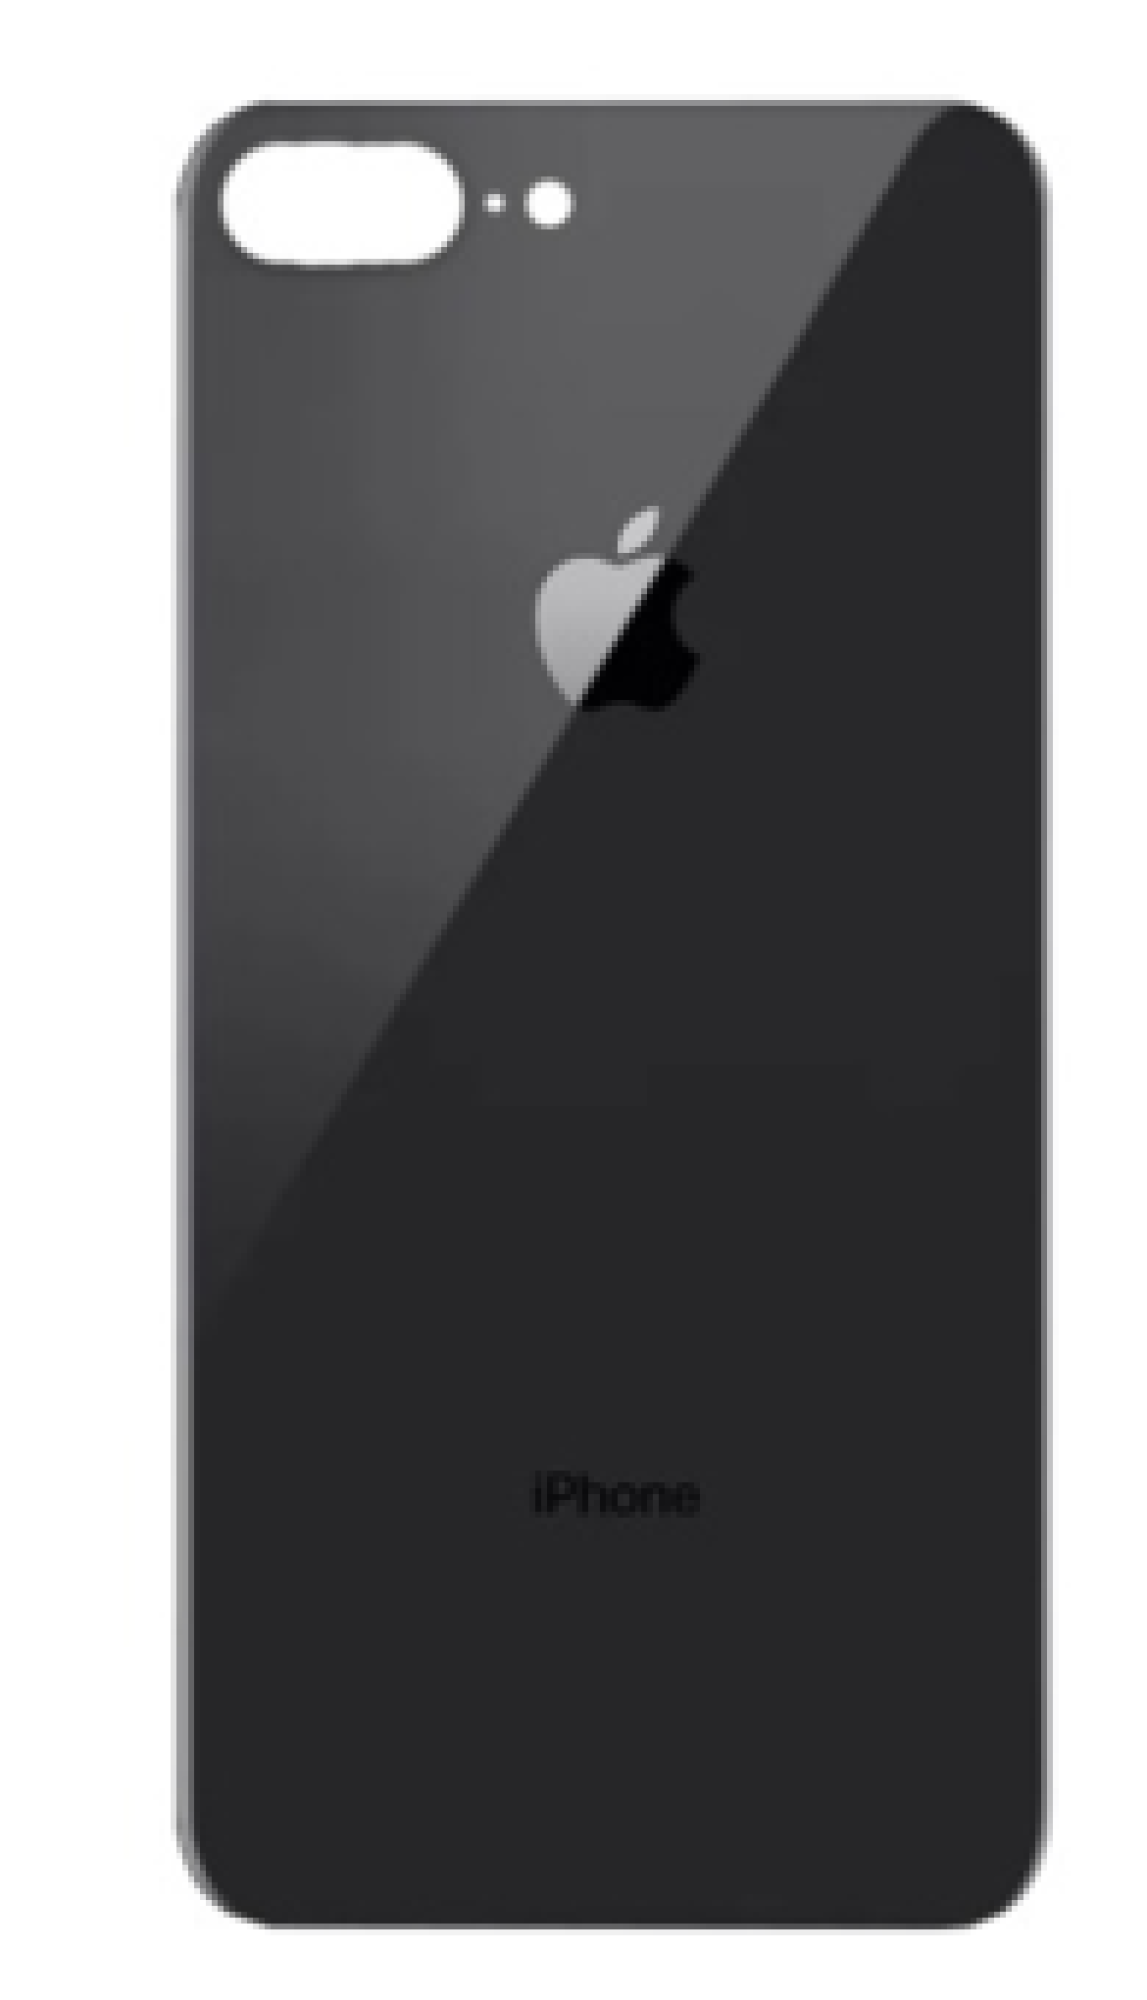 Задняя крышка для Apple iPhone 8G Plus (широкое отверстие под камеру), черная